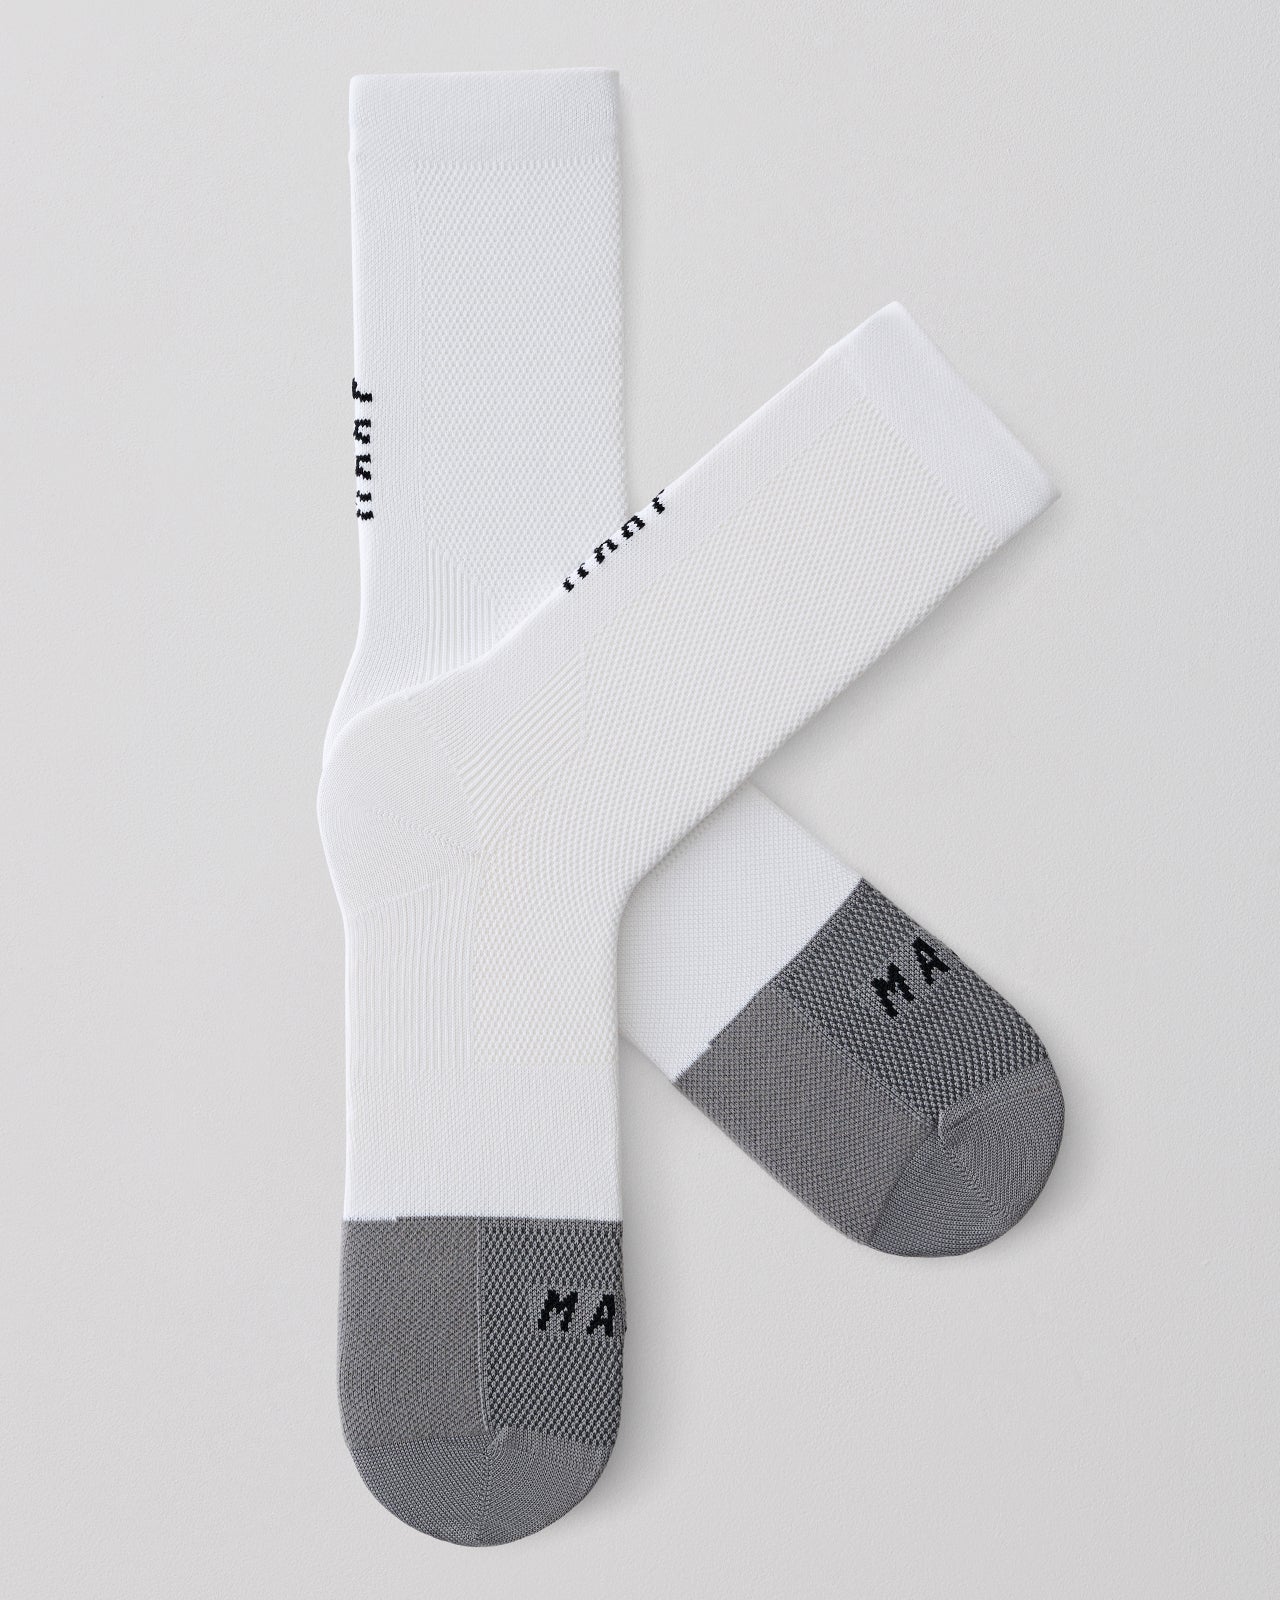 Division Sock - MAAP Cycling Apparel